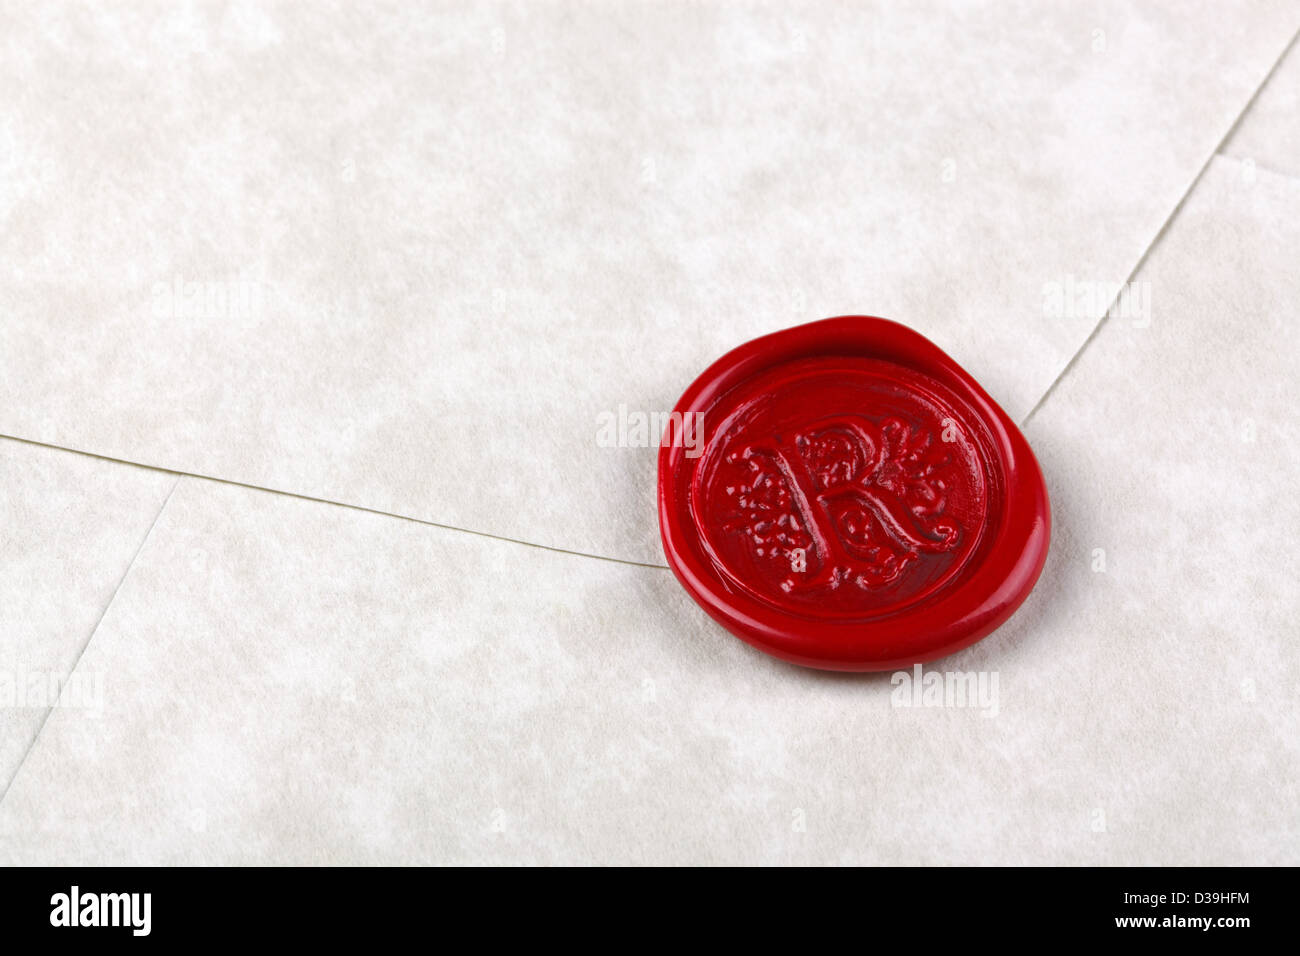 Sobre hechos de papel pergamino sellado con un sello de cera roja Foto de stock